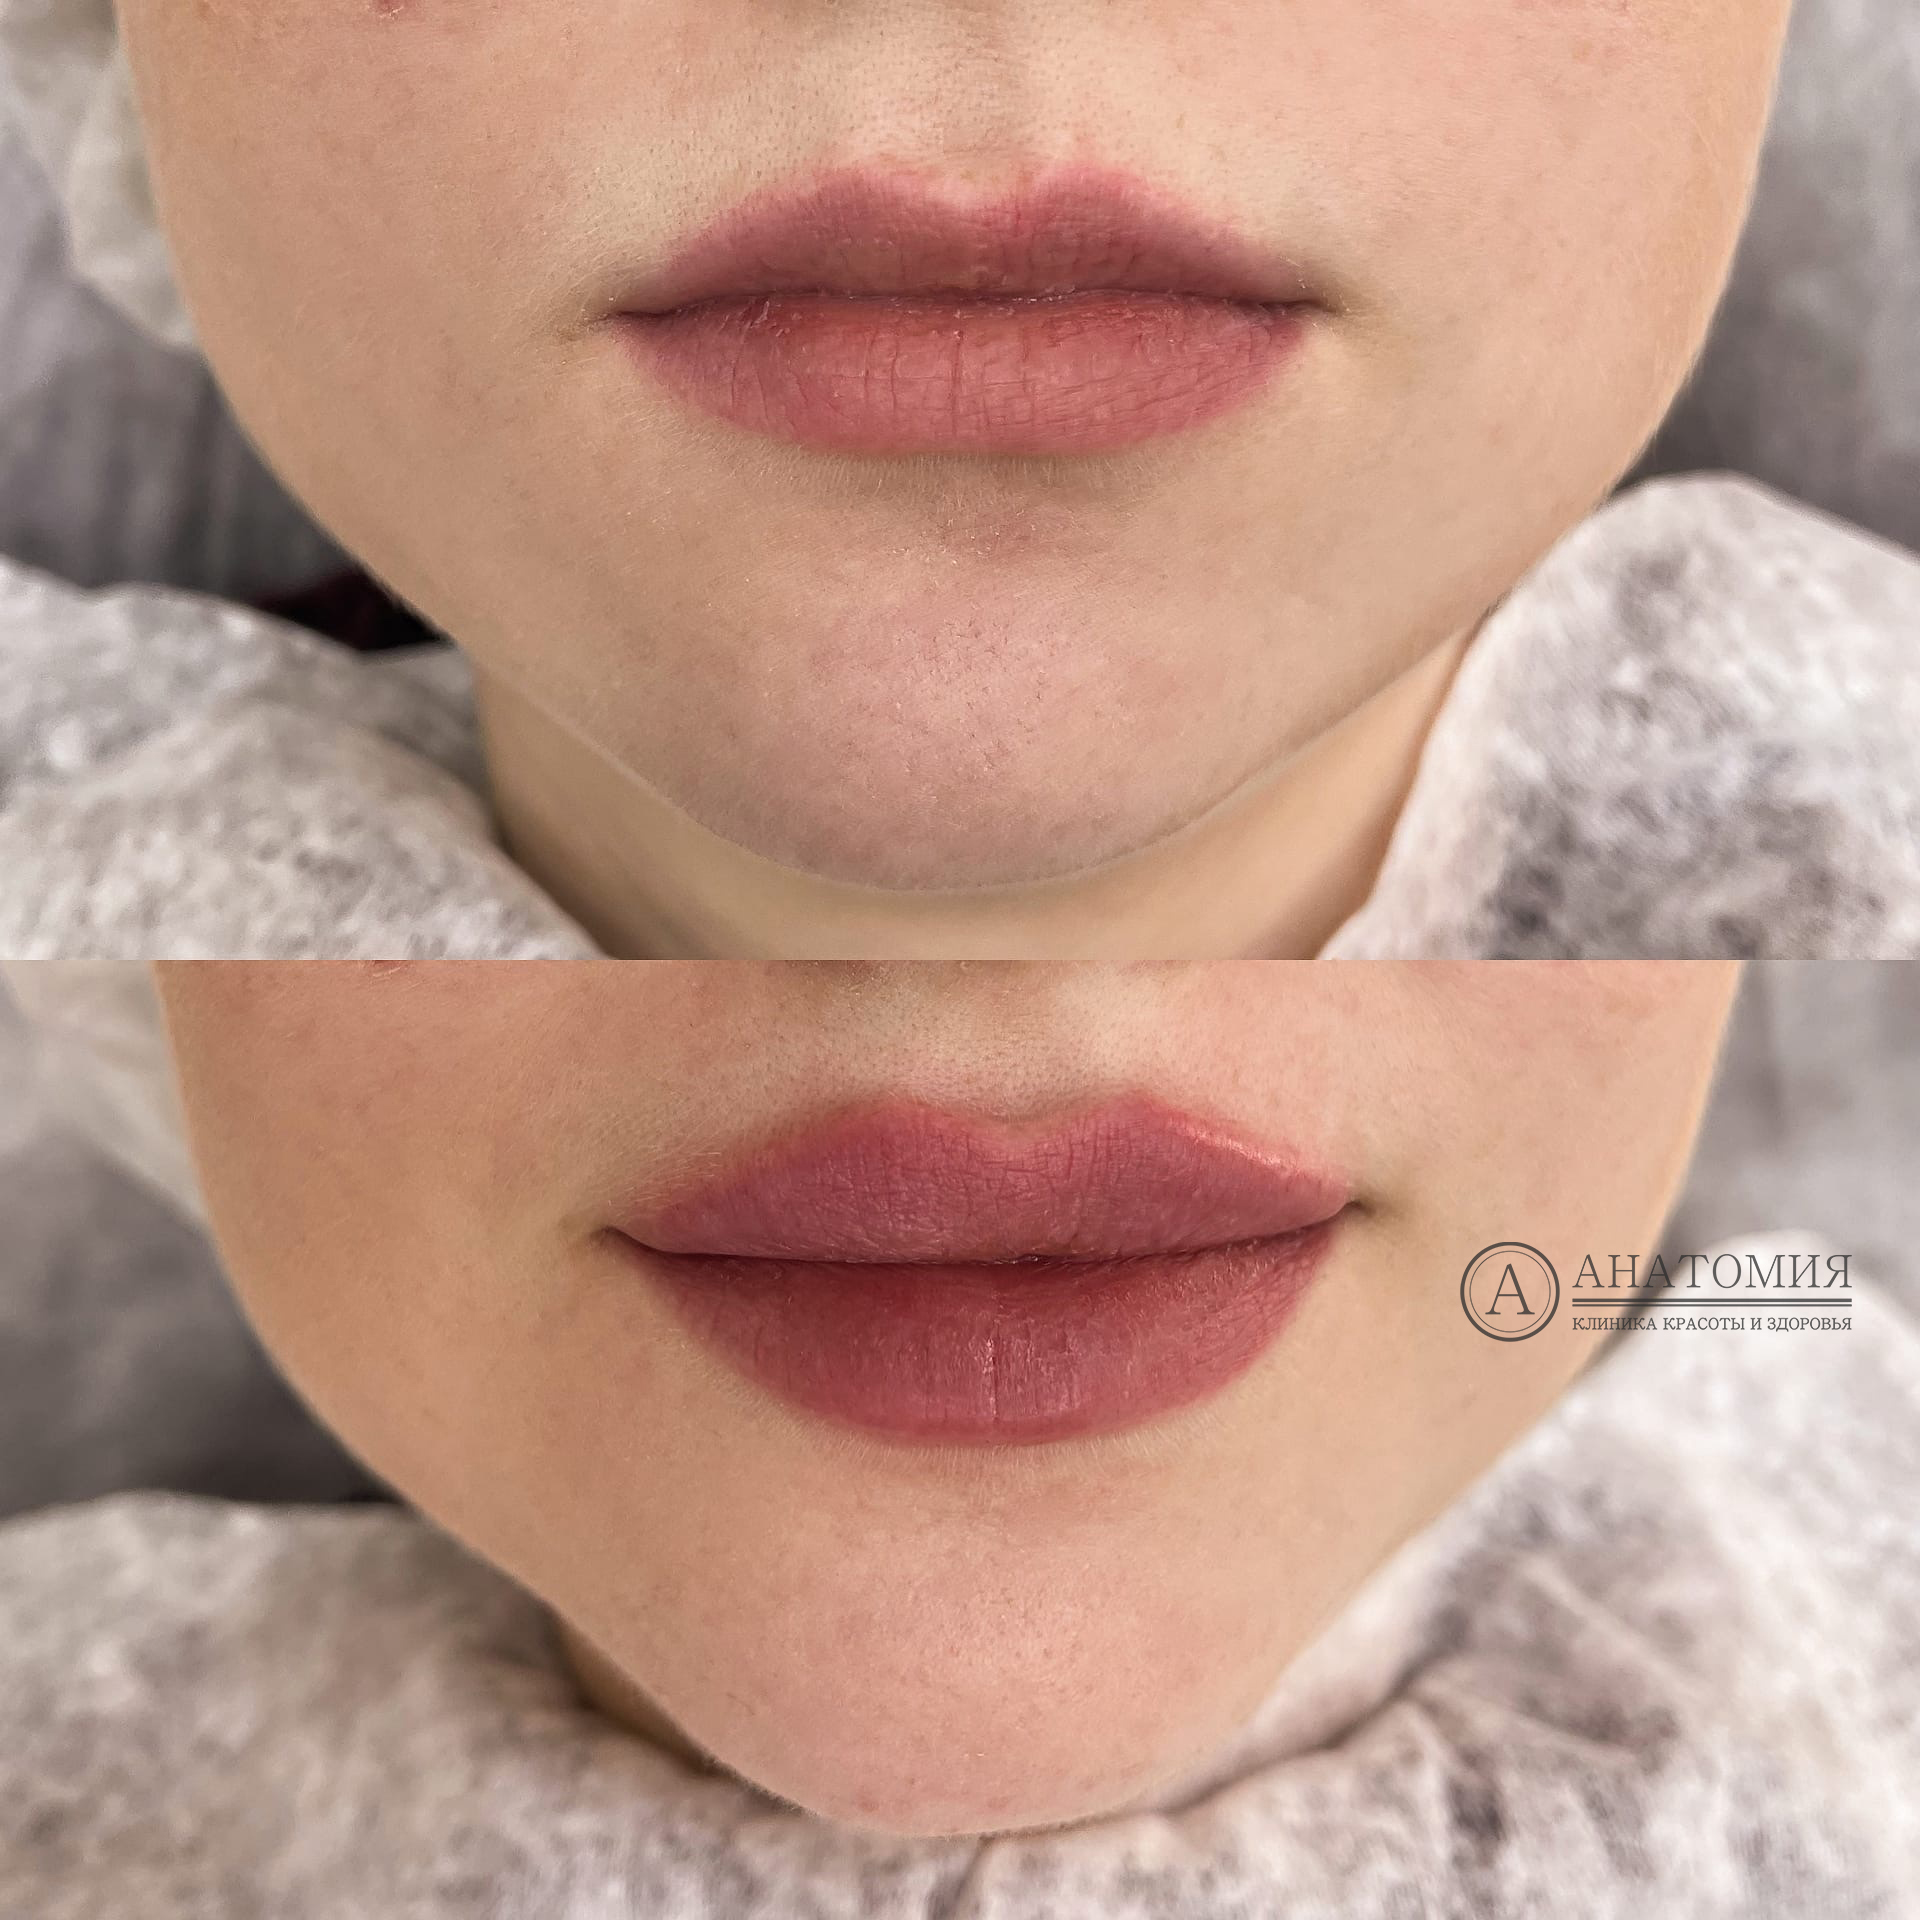 Примеры до и после контурной пластики губ (аугментация губ) | Сеть клиник Анатомия